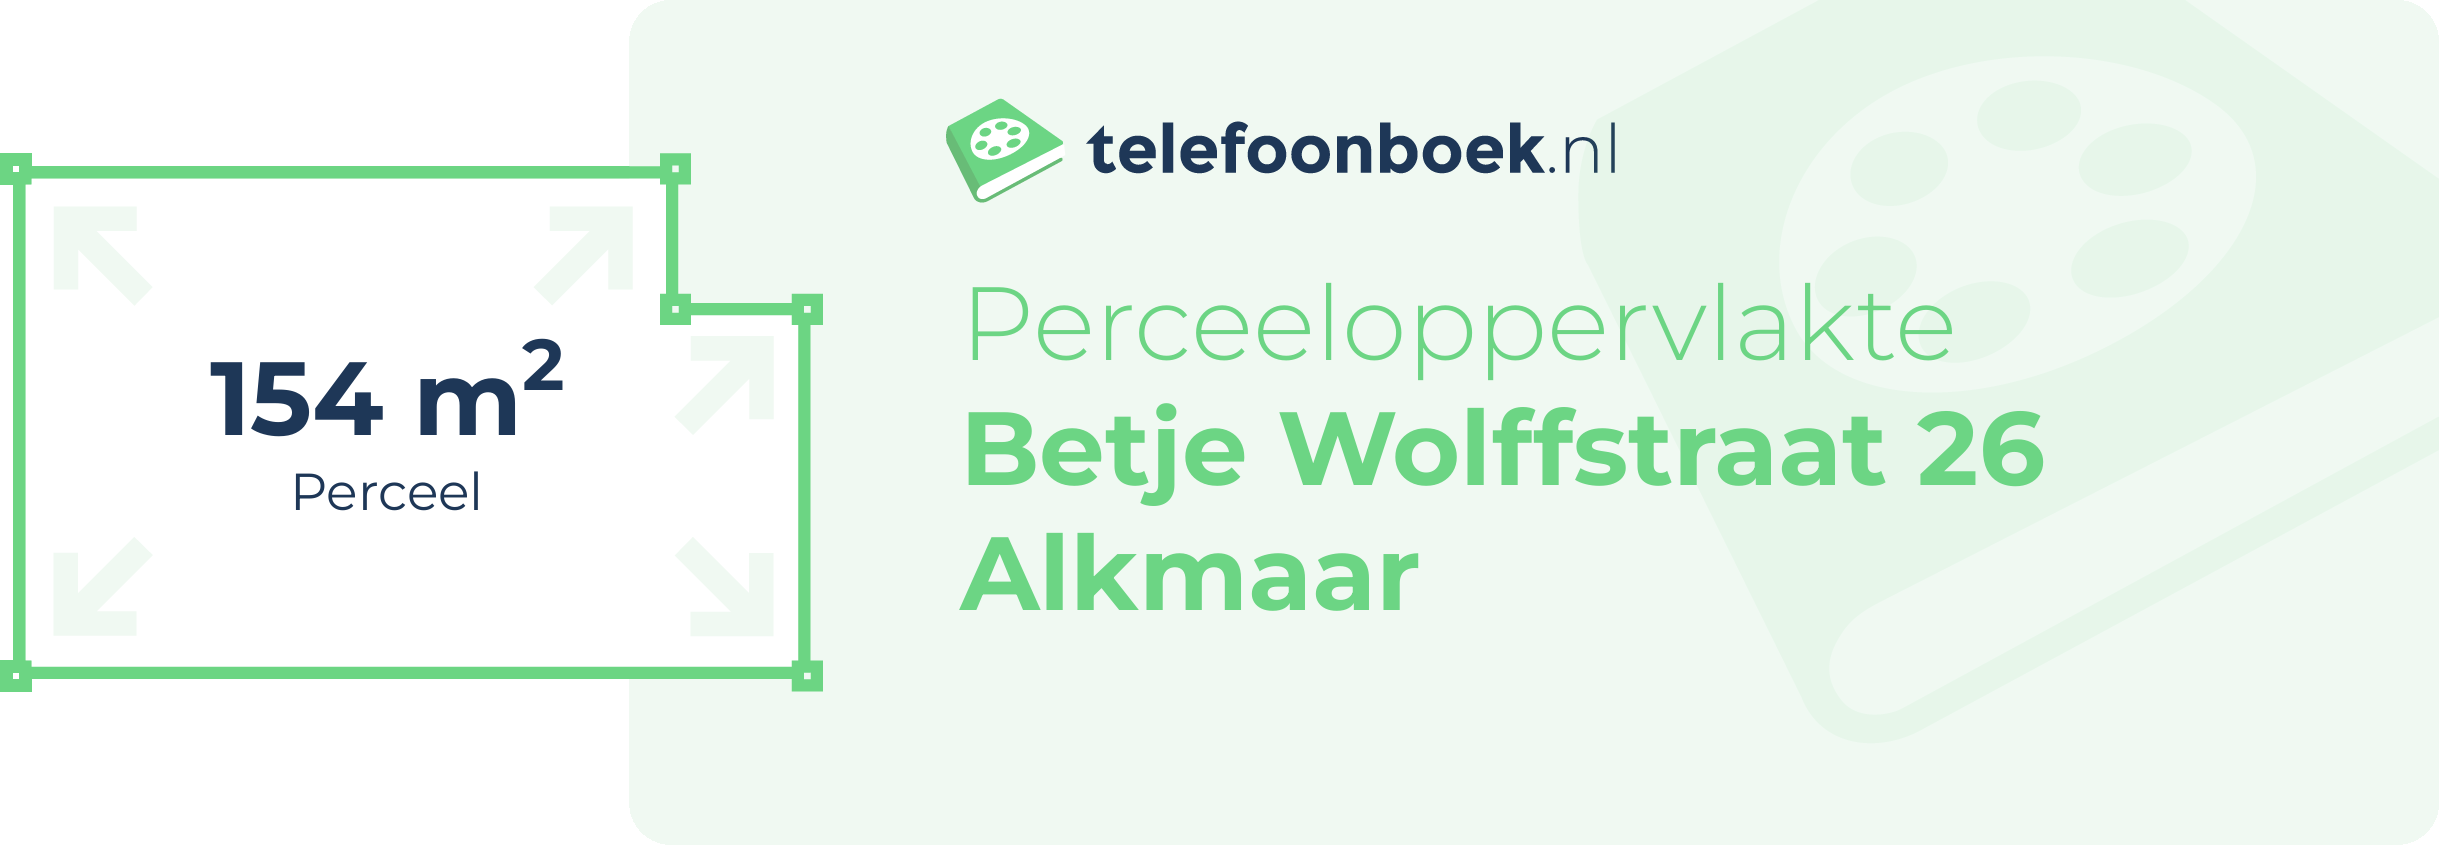 Perceeloppervlakte Betje Wolffstraat 26 Alkmaar